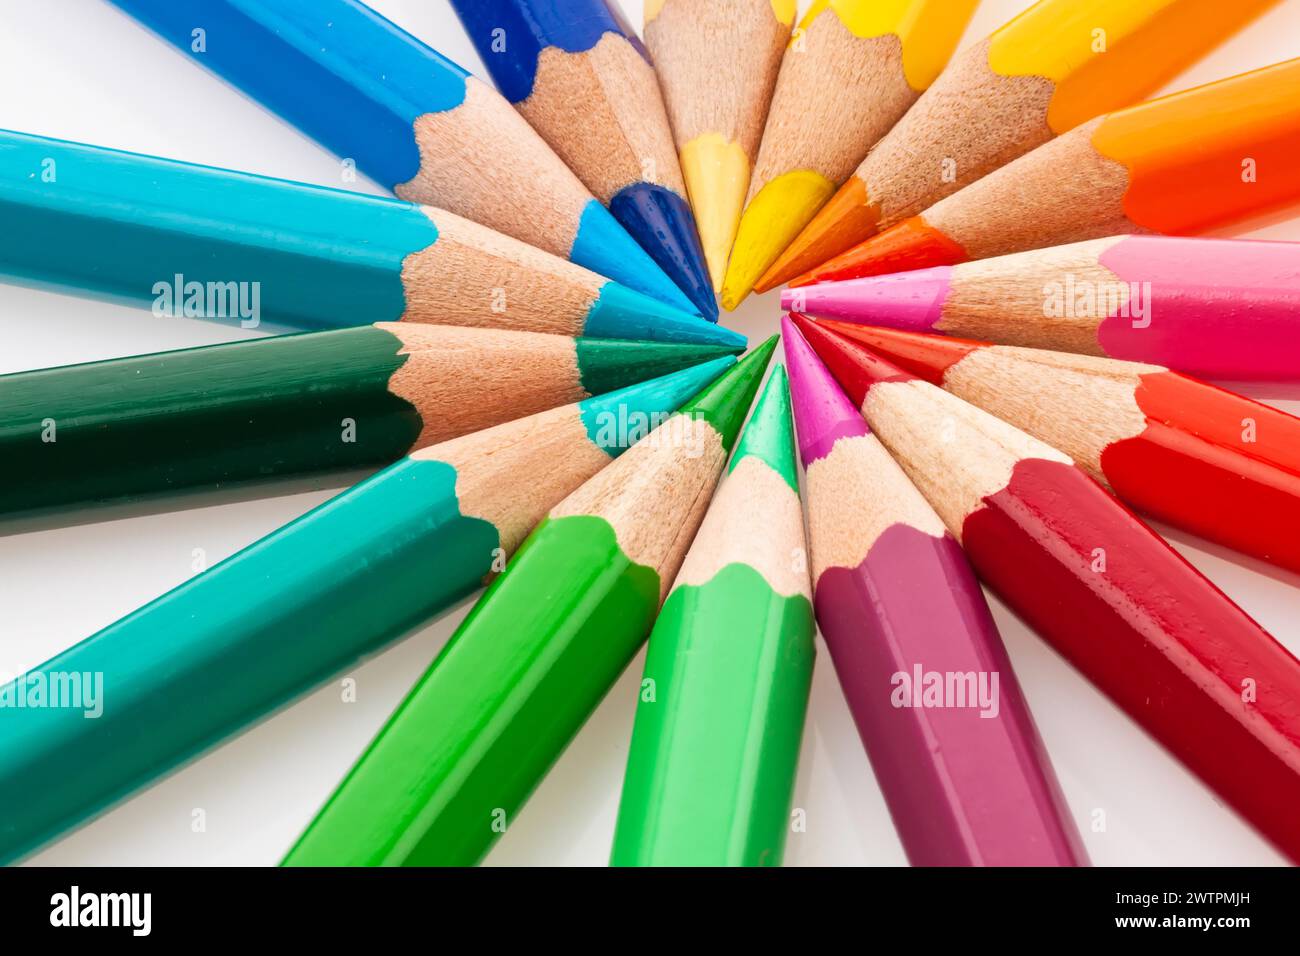 Beaucoup de crayons de différentes couleurs sur un fond blanc Banque D'Images